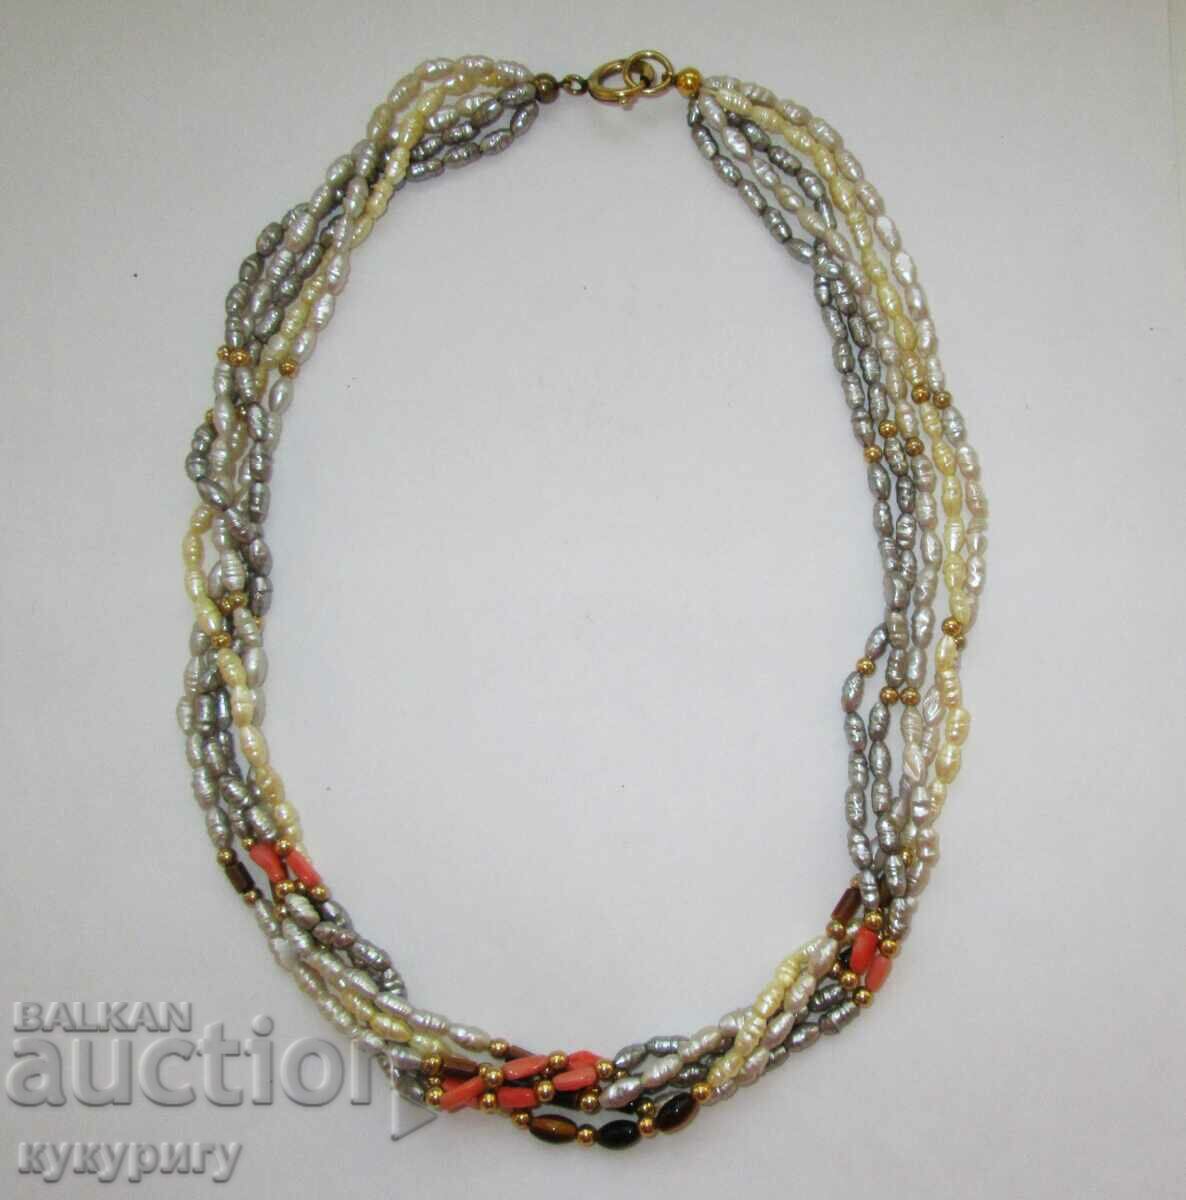 Women's 5-row necklace jewelry